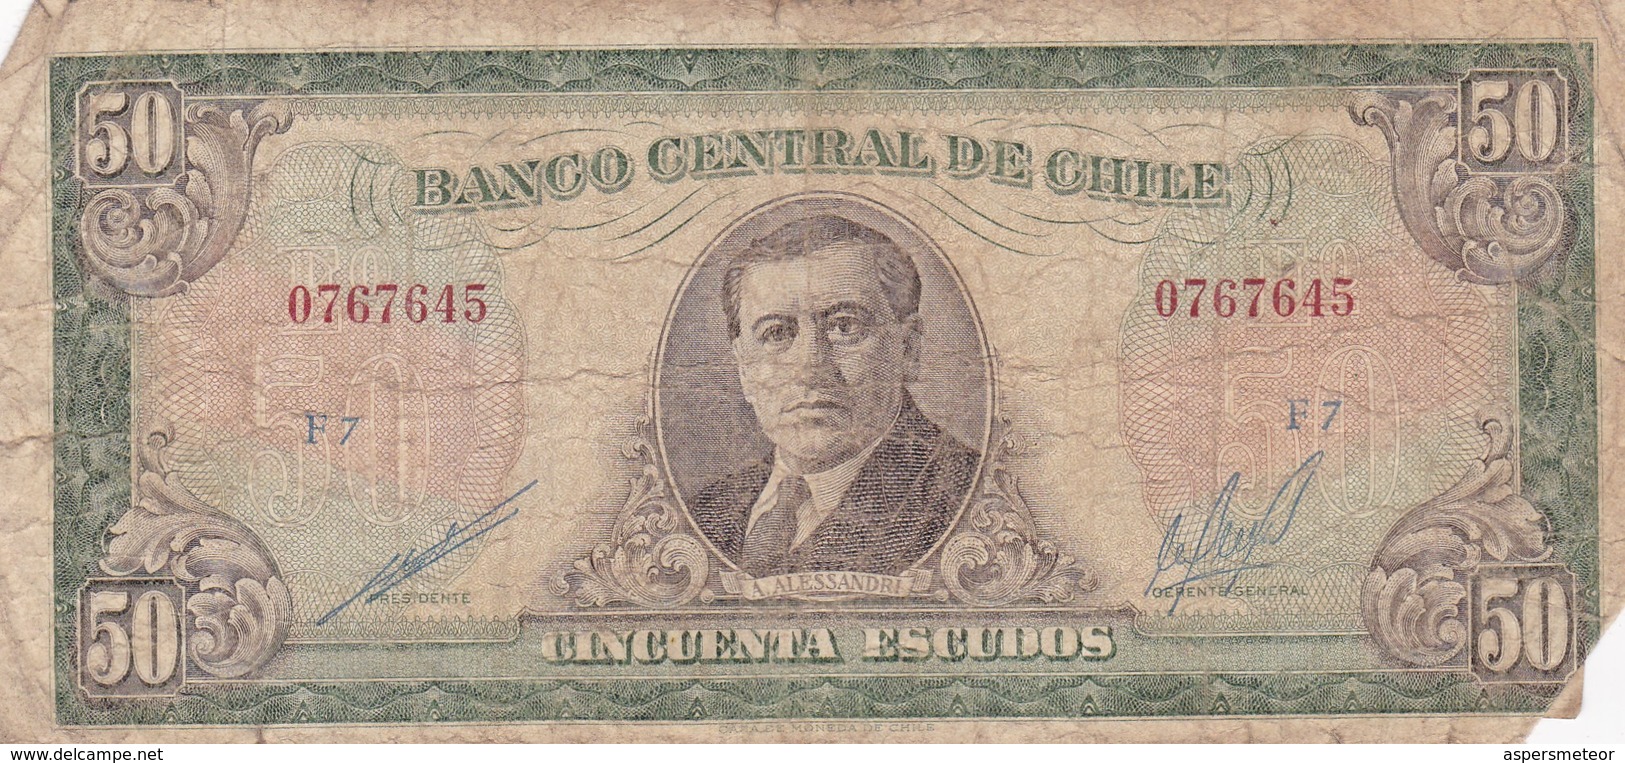 CINCUENTA ESCUDOS. A. ALESSANDRI. CHILE. CIRCA 1960s-BILLETE BANKNOTE BILLET NOTA-BLEUP - Chile